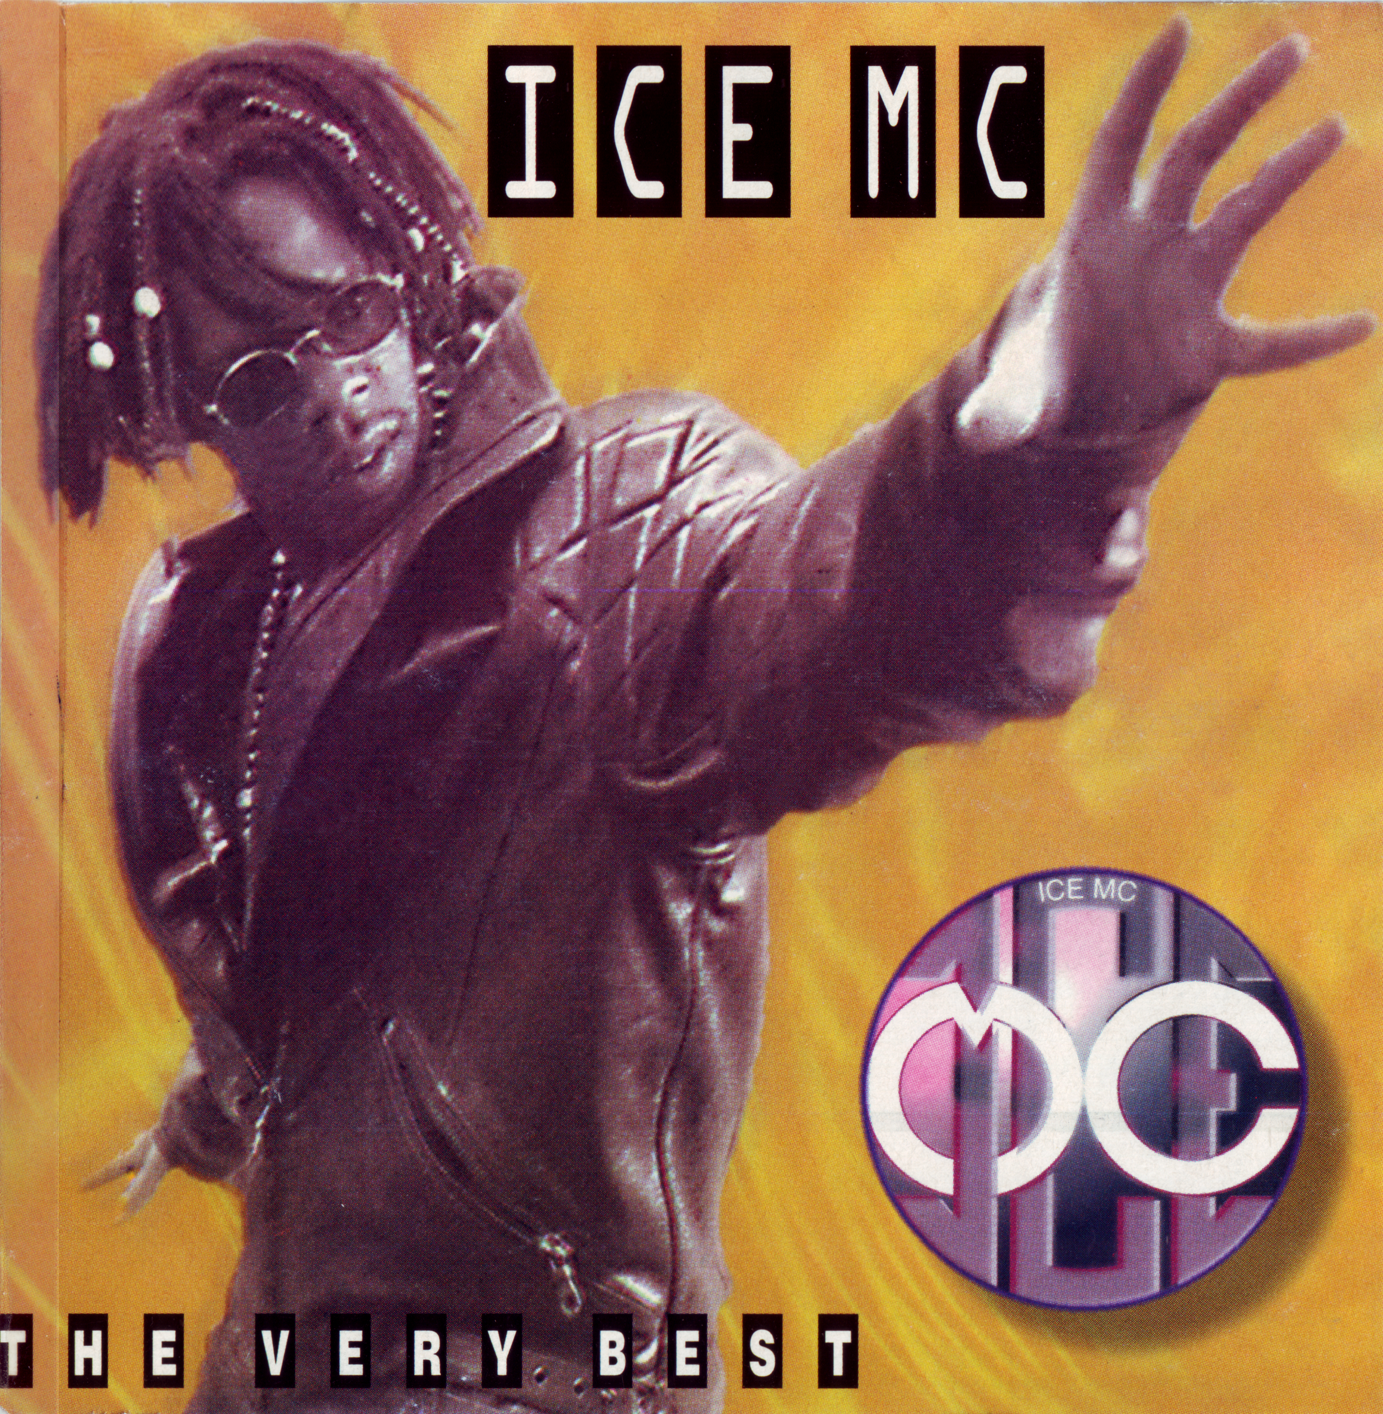 Ice mc feat